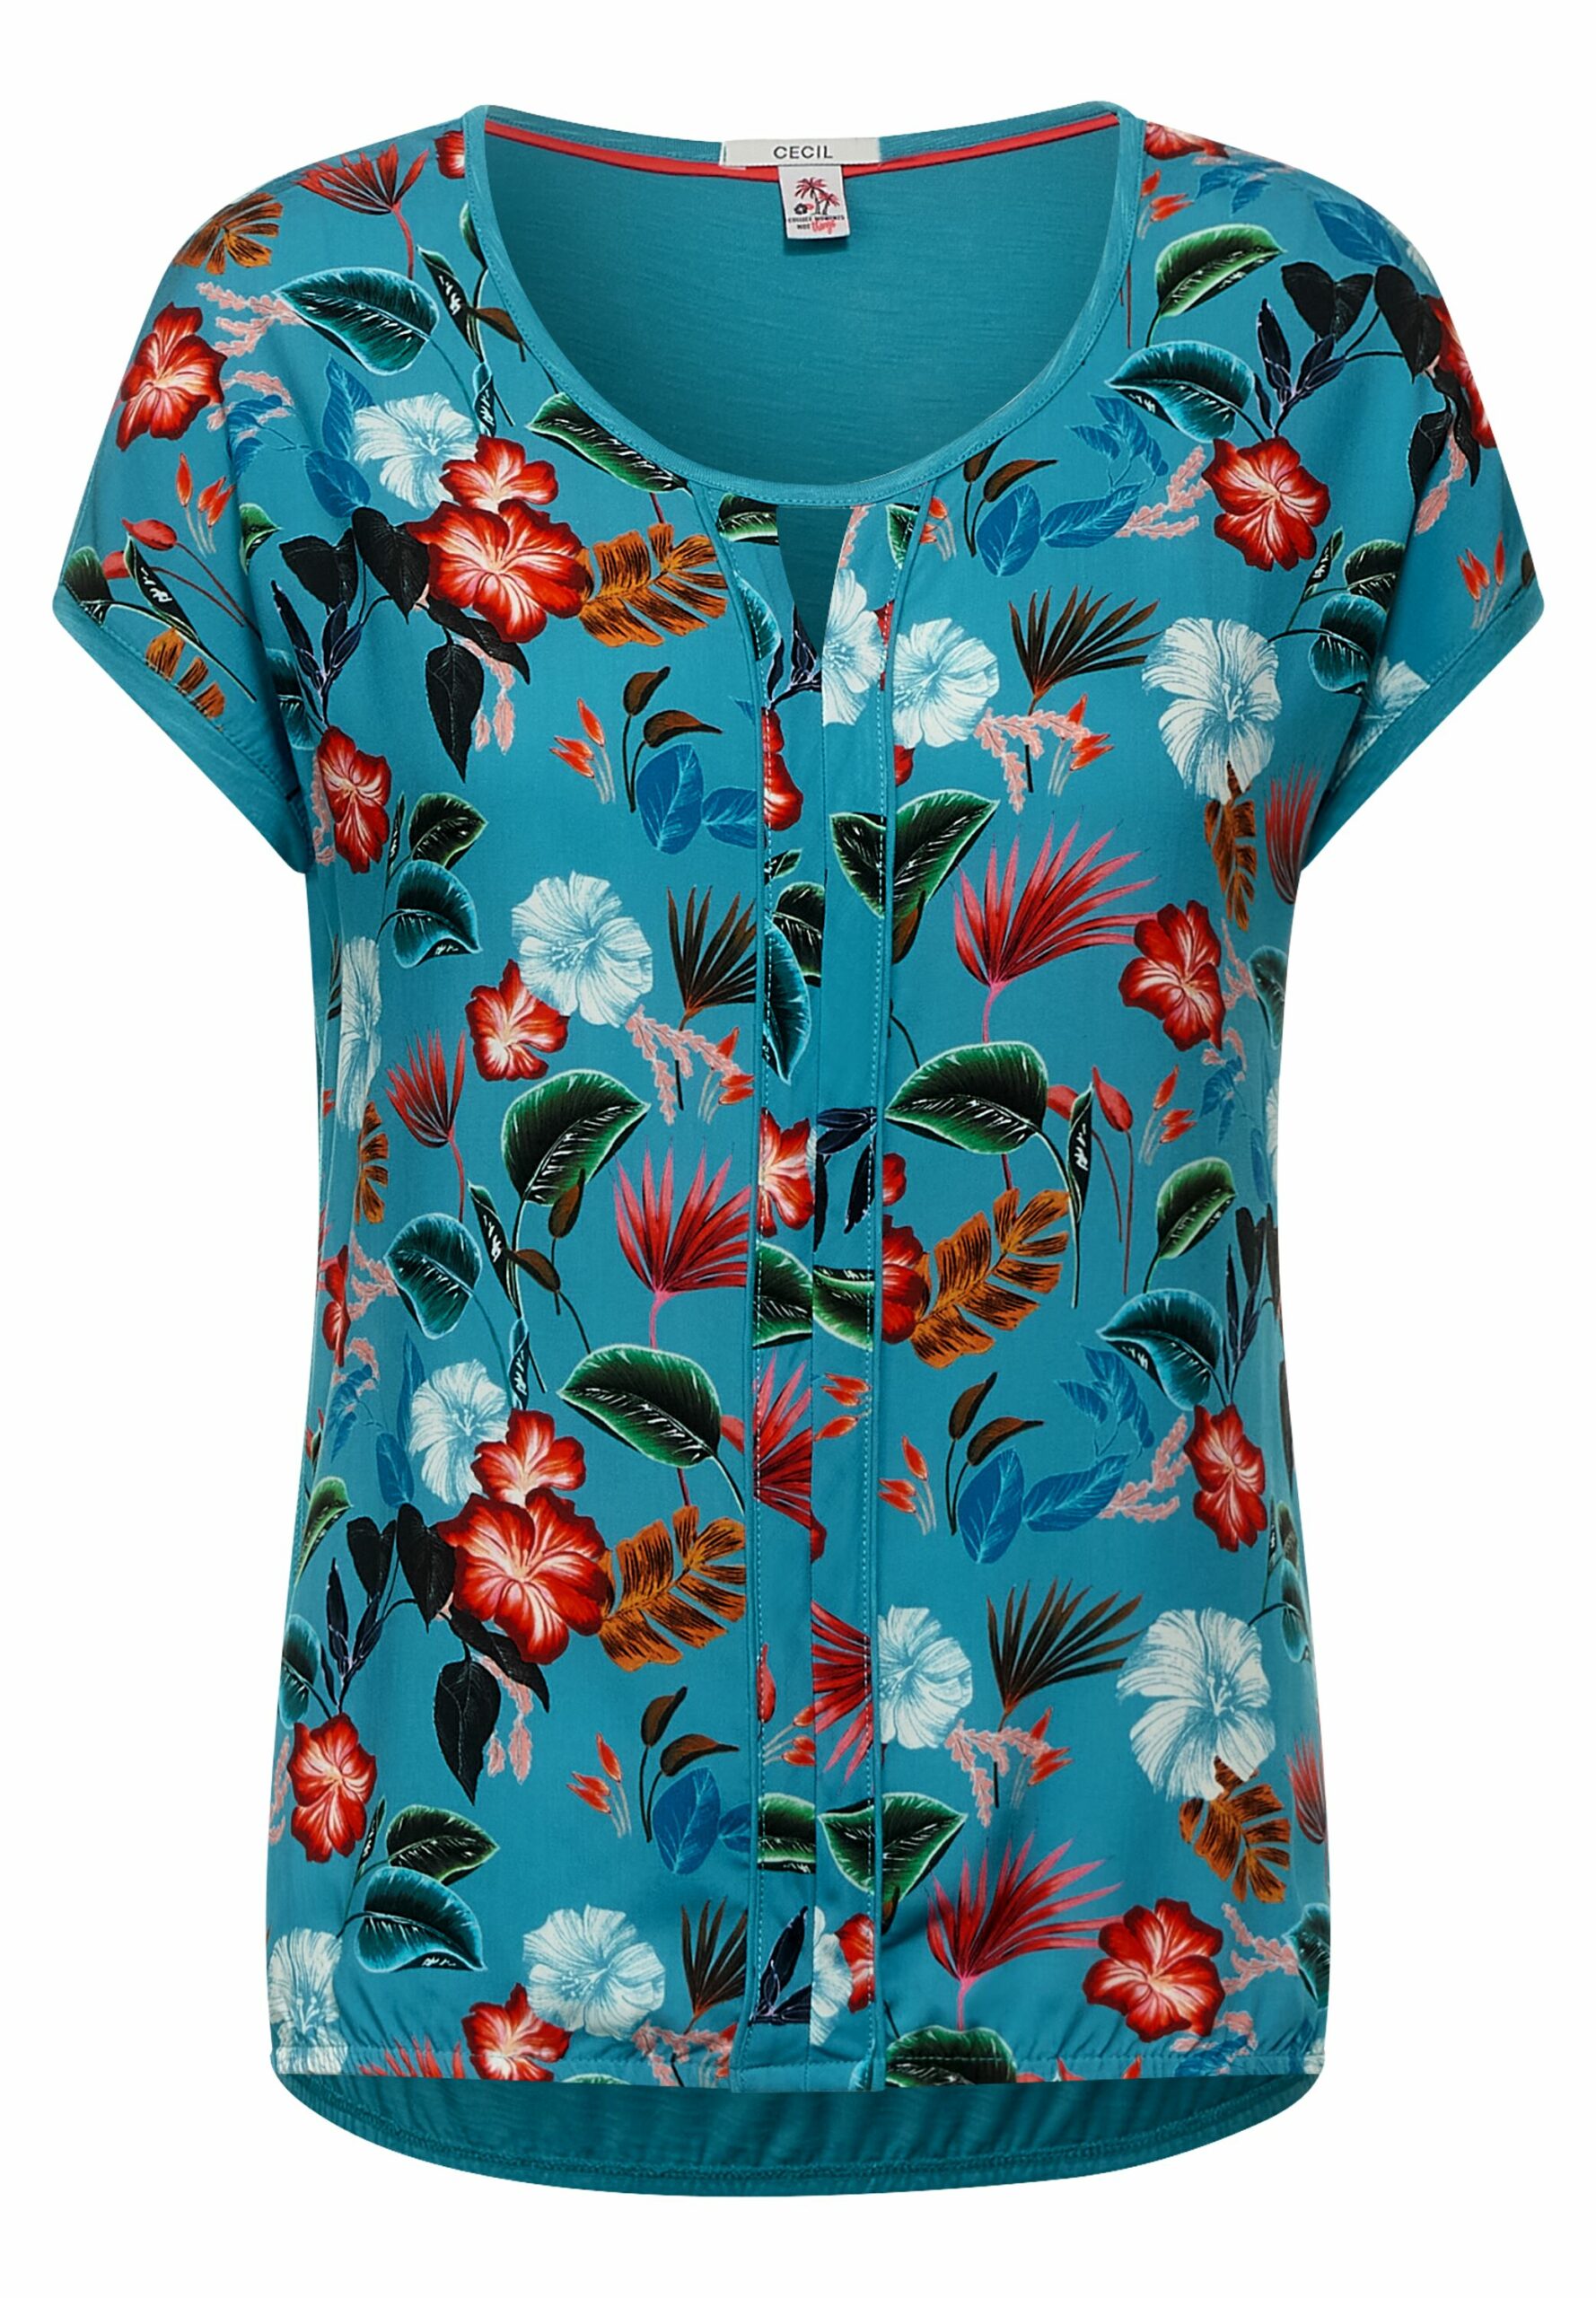 CECIL - T-Shirt mit Fahr Blumen Print Onlineshop Modehaus 